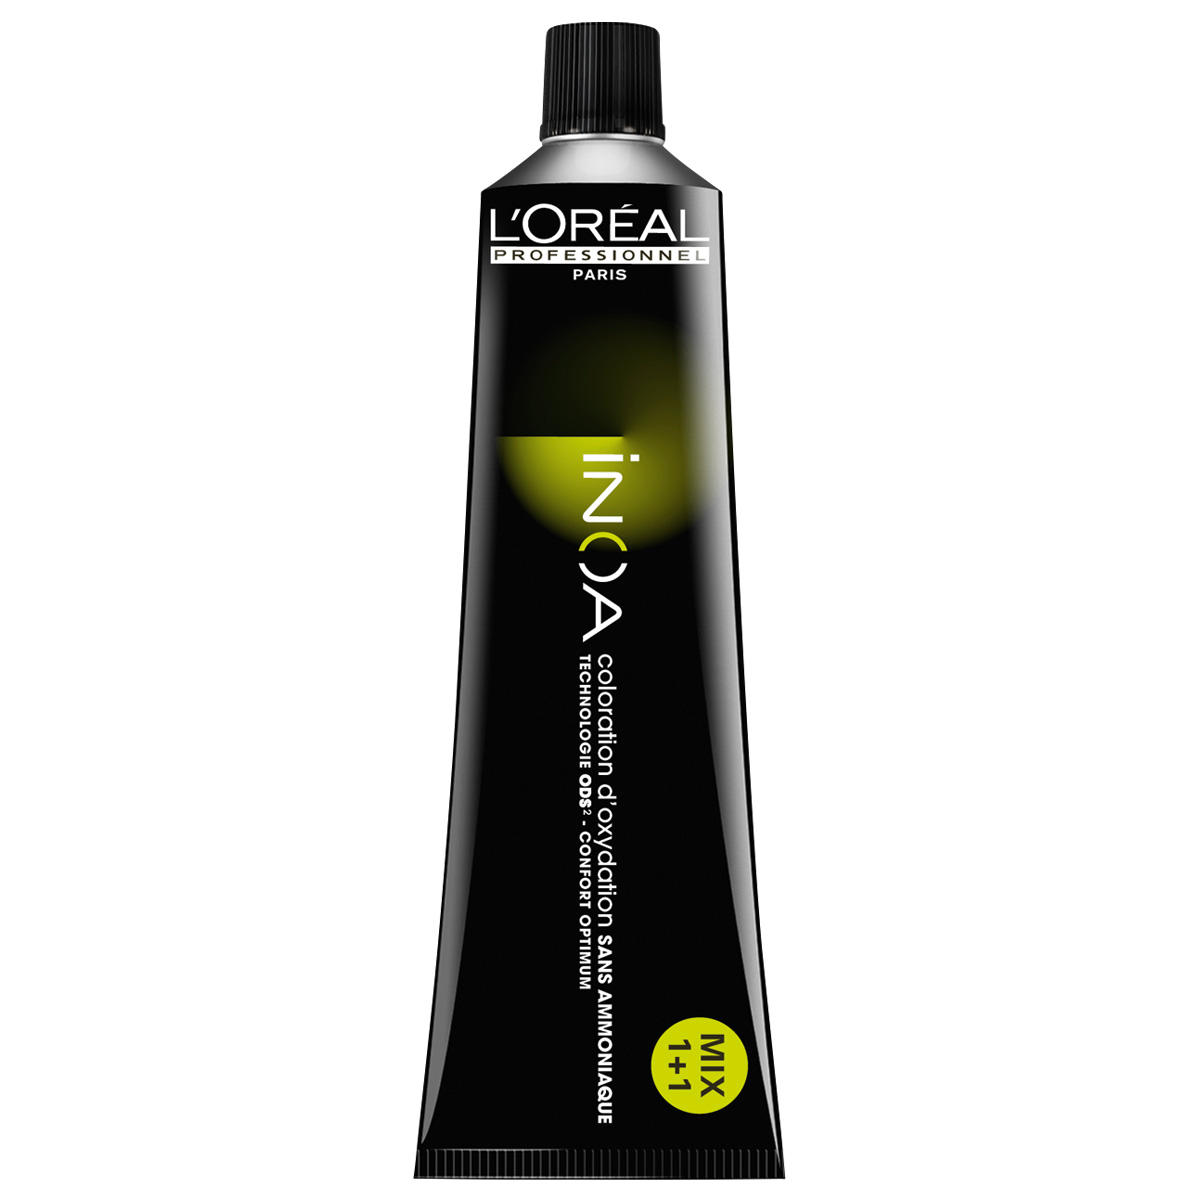 L'Oréal Professionnel Paris Coloration 5.12 Irisé ceniza marrón claro, tubo 60 ml